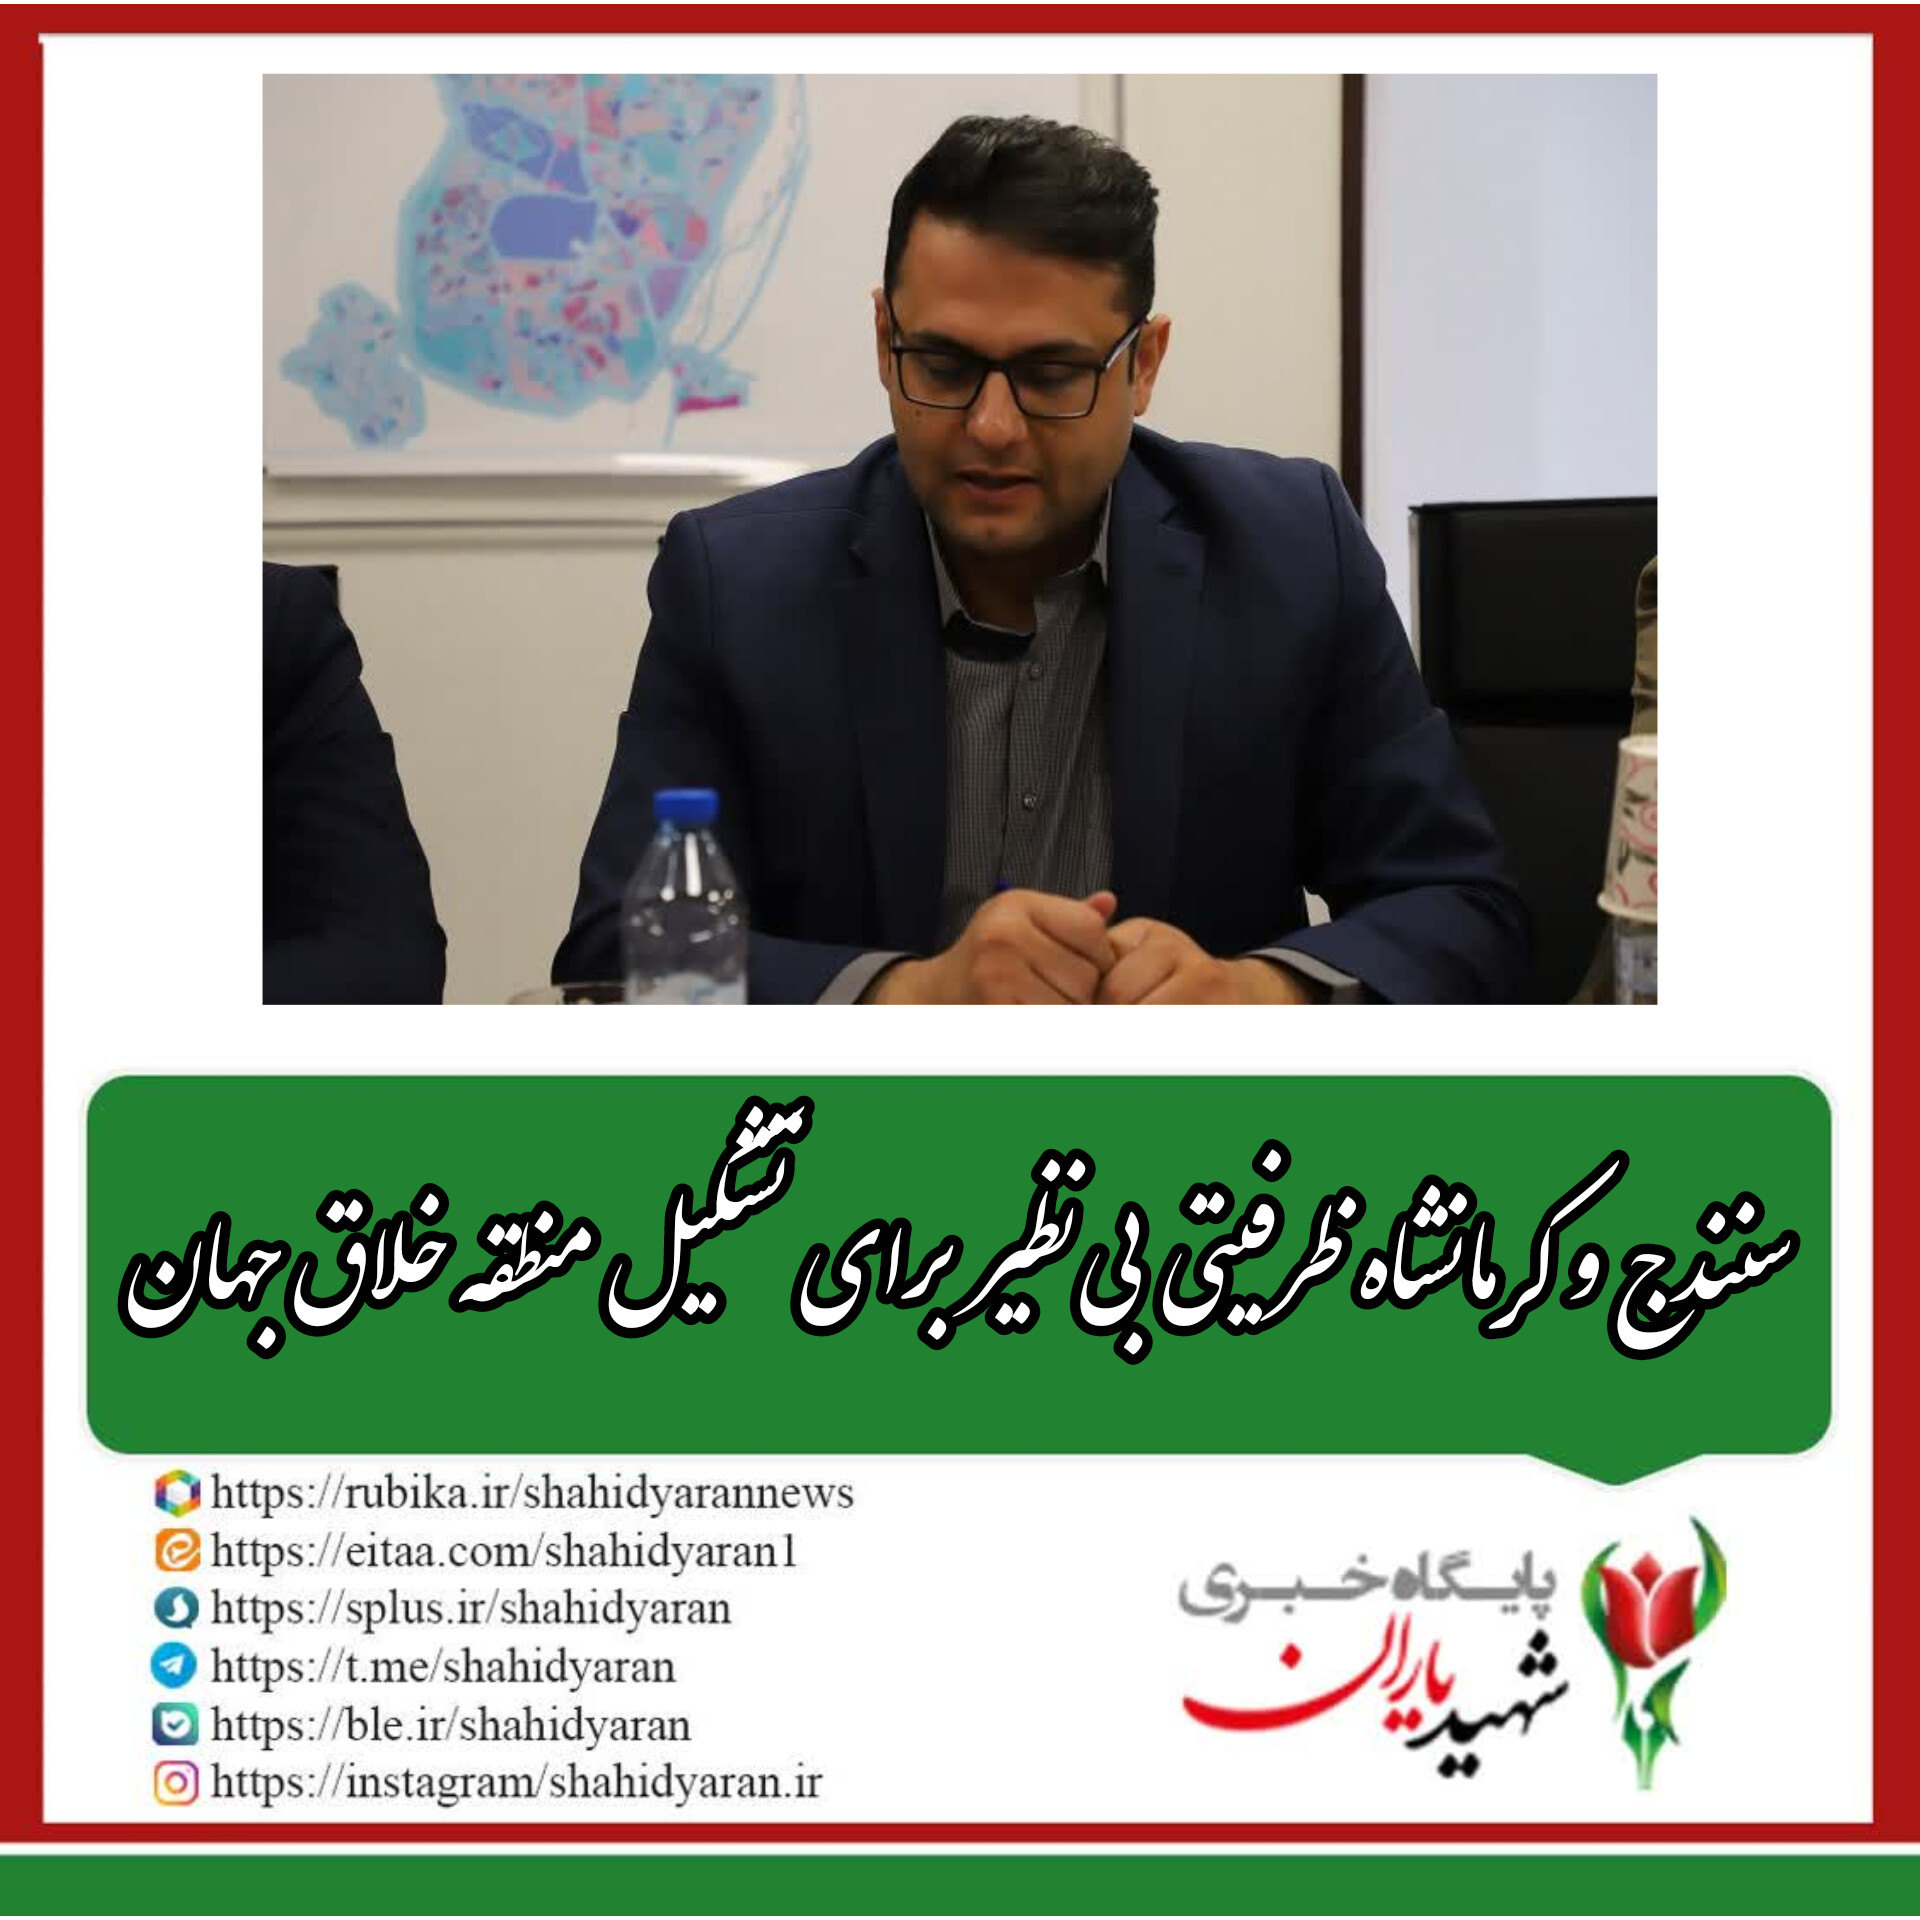 رییس سازمان فرهنگی، ورزشی اجتماعی شهرداری کرمانشاه: